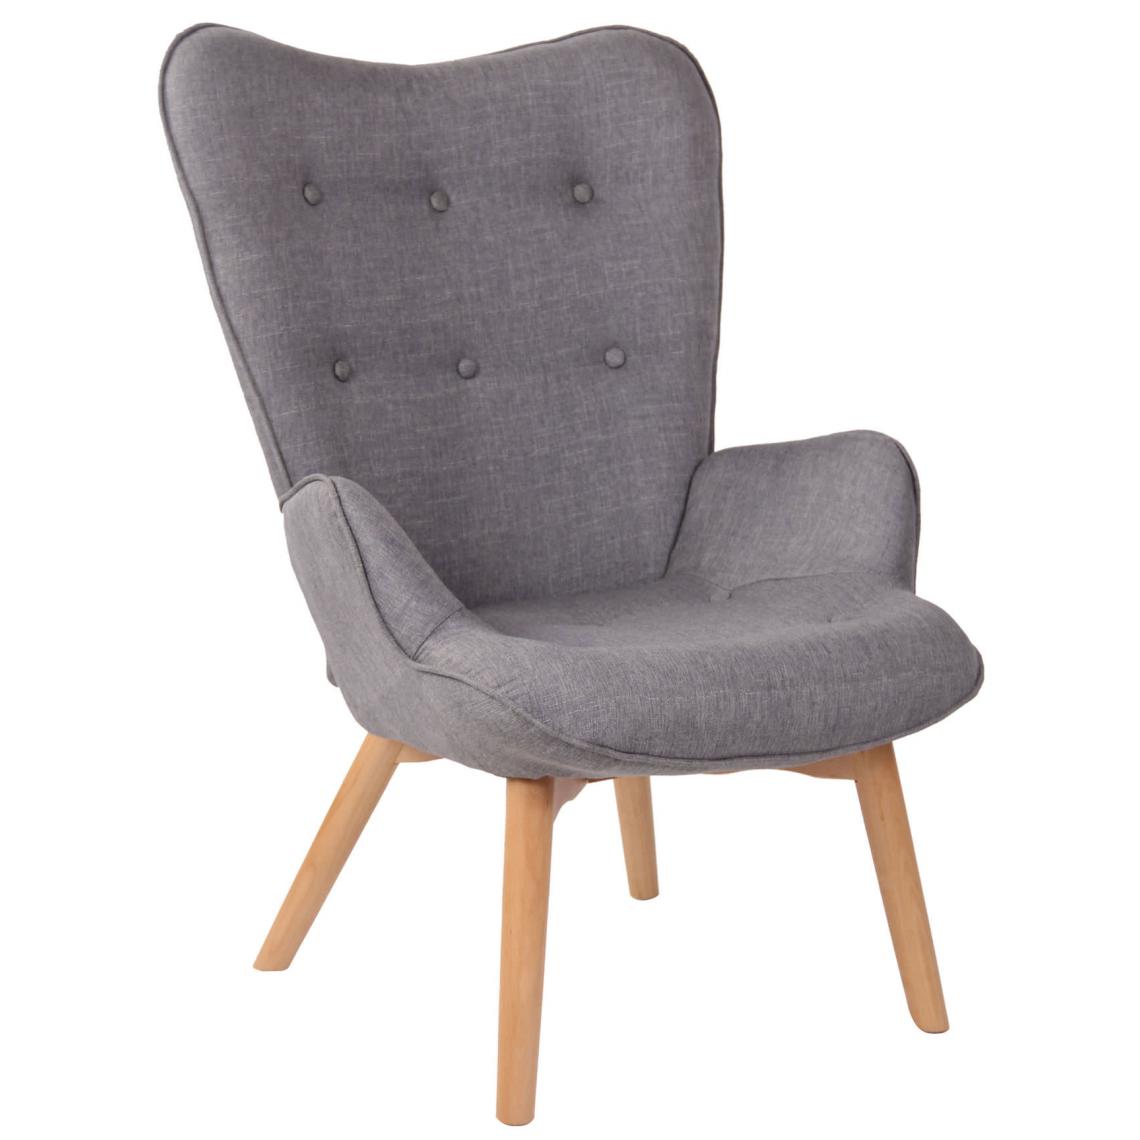 Icaverne - Admirable Chaise longue en tissu collection Quito couleur gris - Chaises